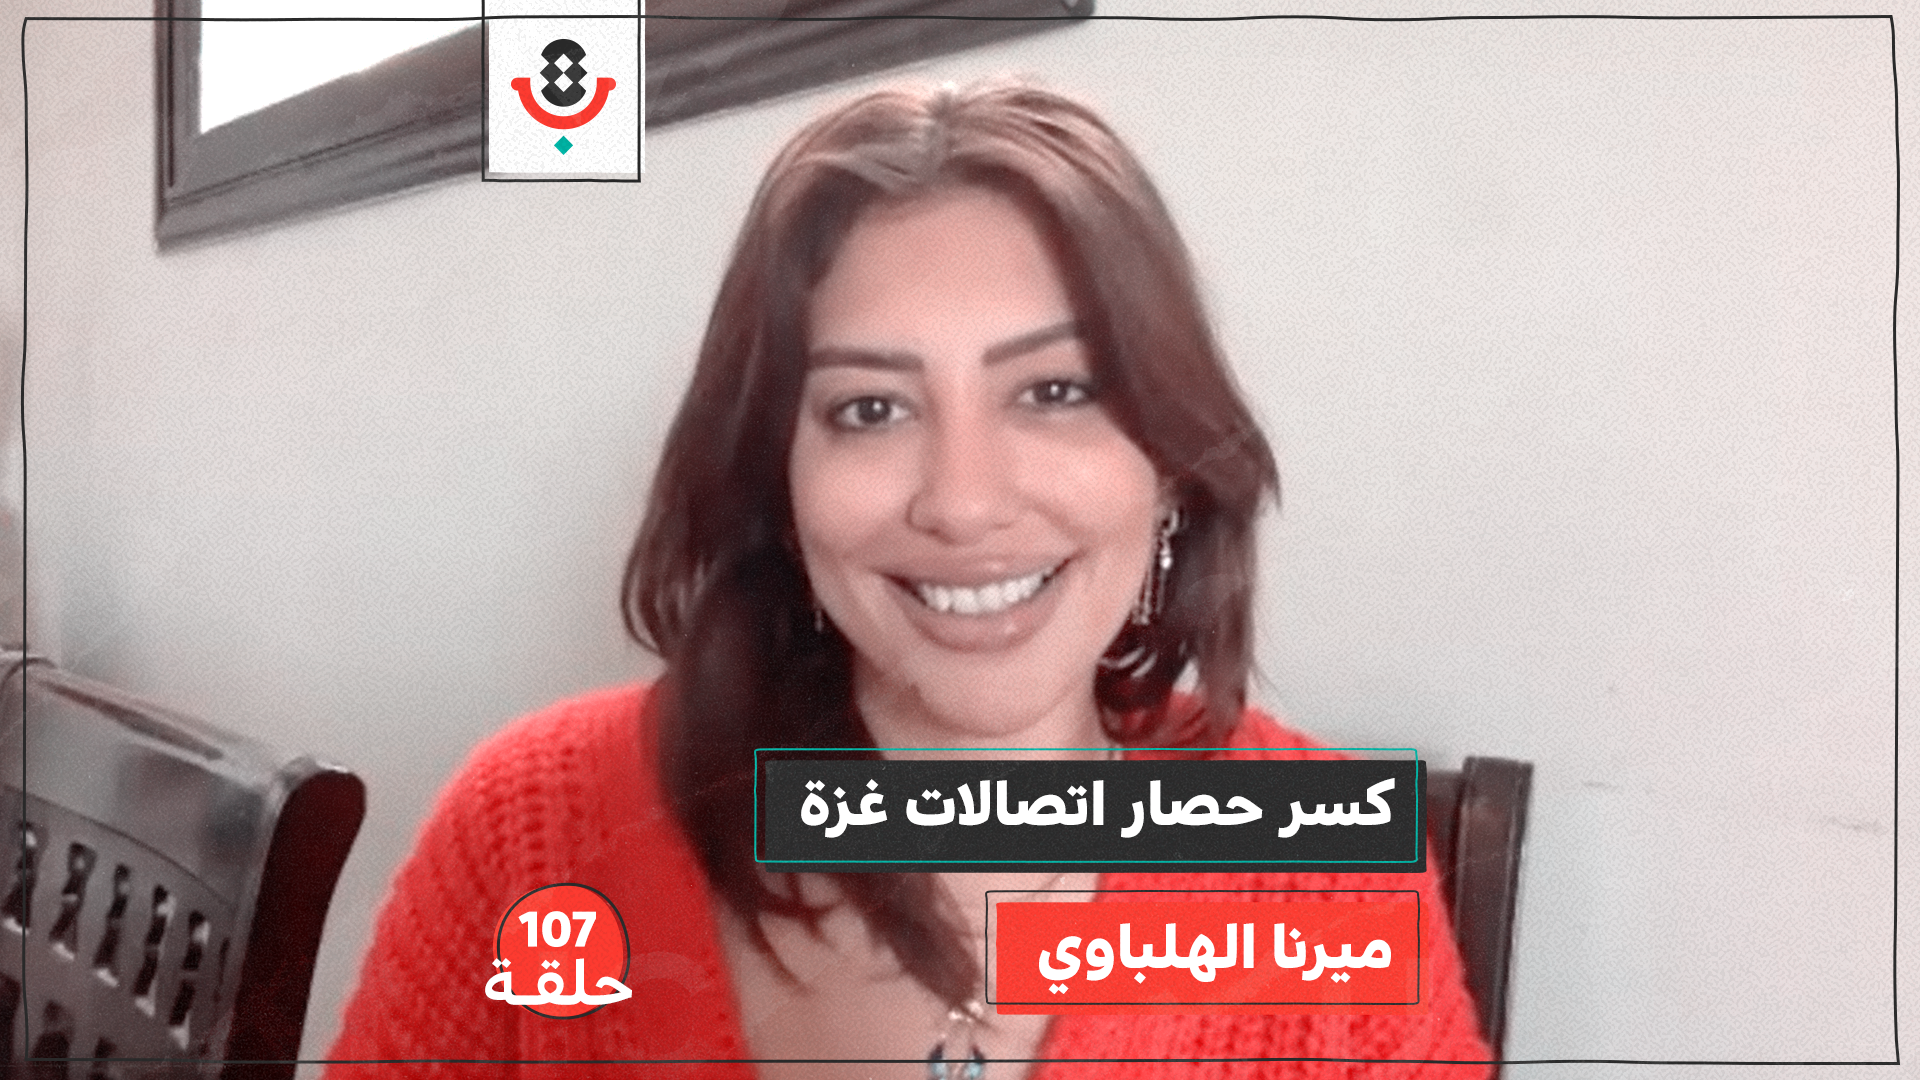 كيف كسرت مبادرة مصرية #ConnectingGaza حصار الاتصالات على غزة؟ مع ميرنا الهلباوي | #107